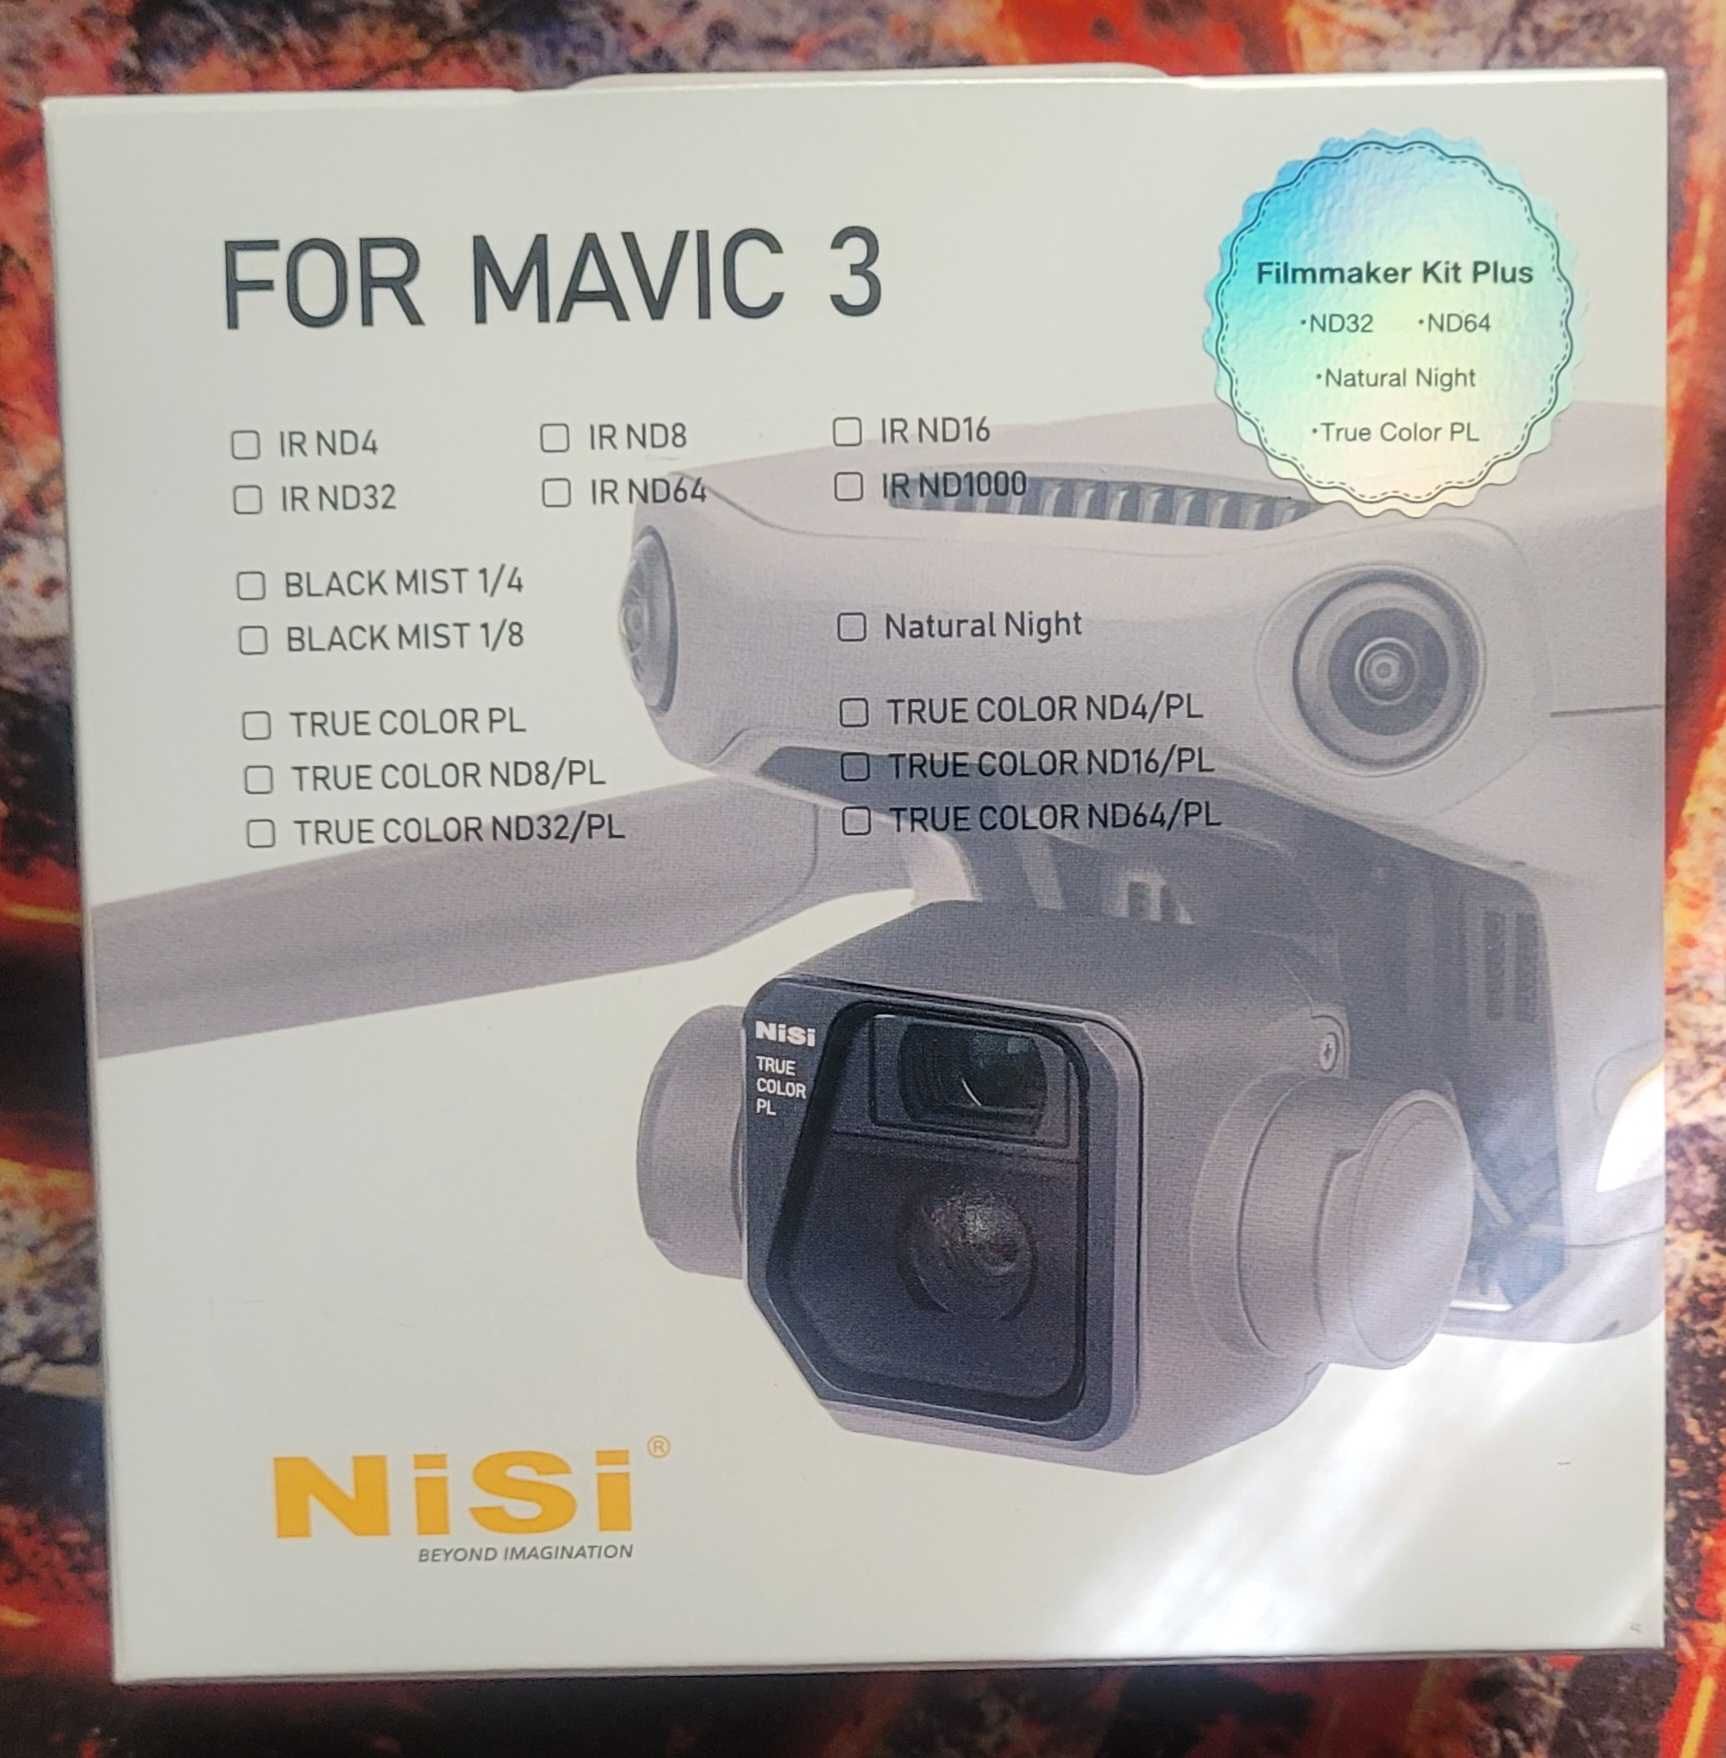 NiSi DJI Mavic 3 Filmmaker kit – Zestaw Filtrów